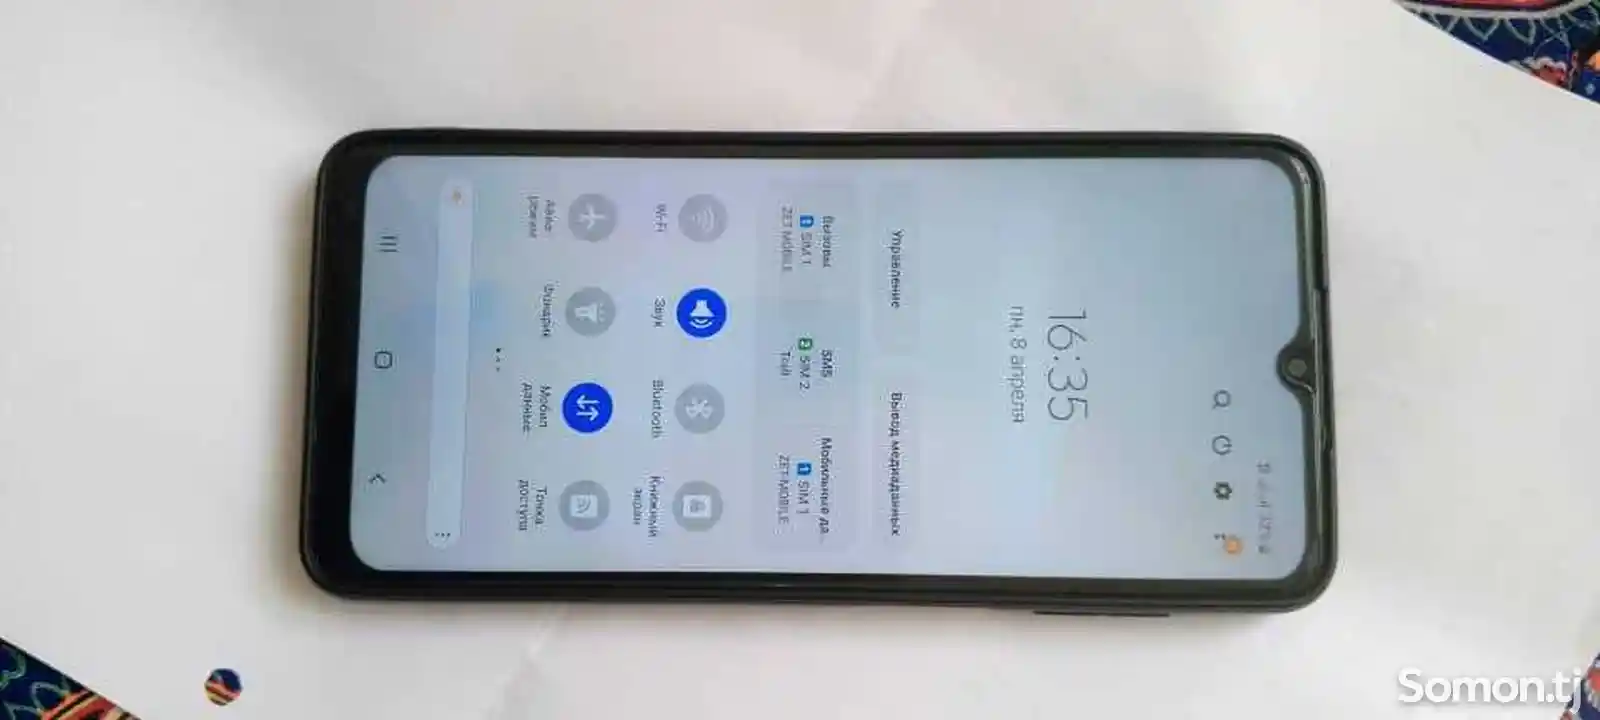 Samsung Galaxy A12-4